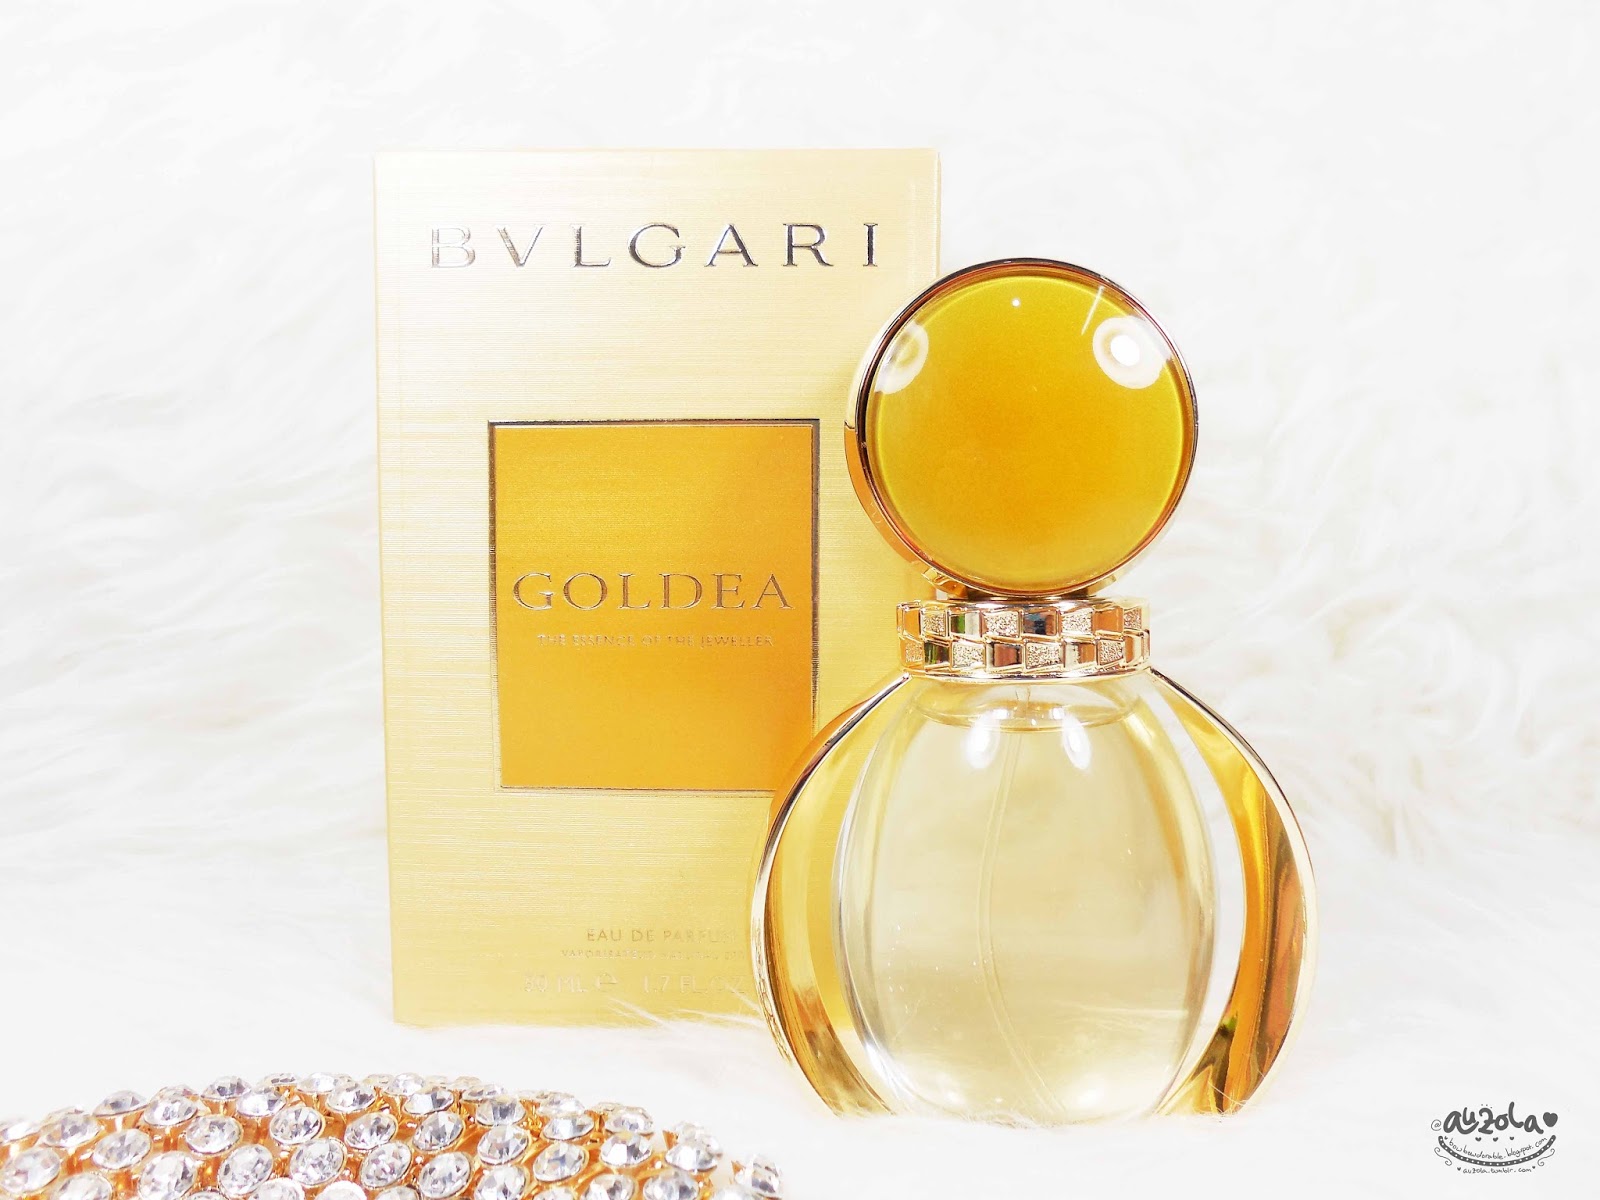 bvlgari goldea perfume review